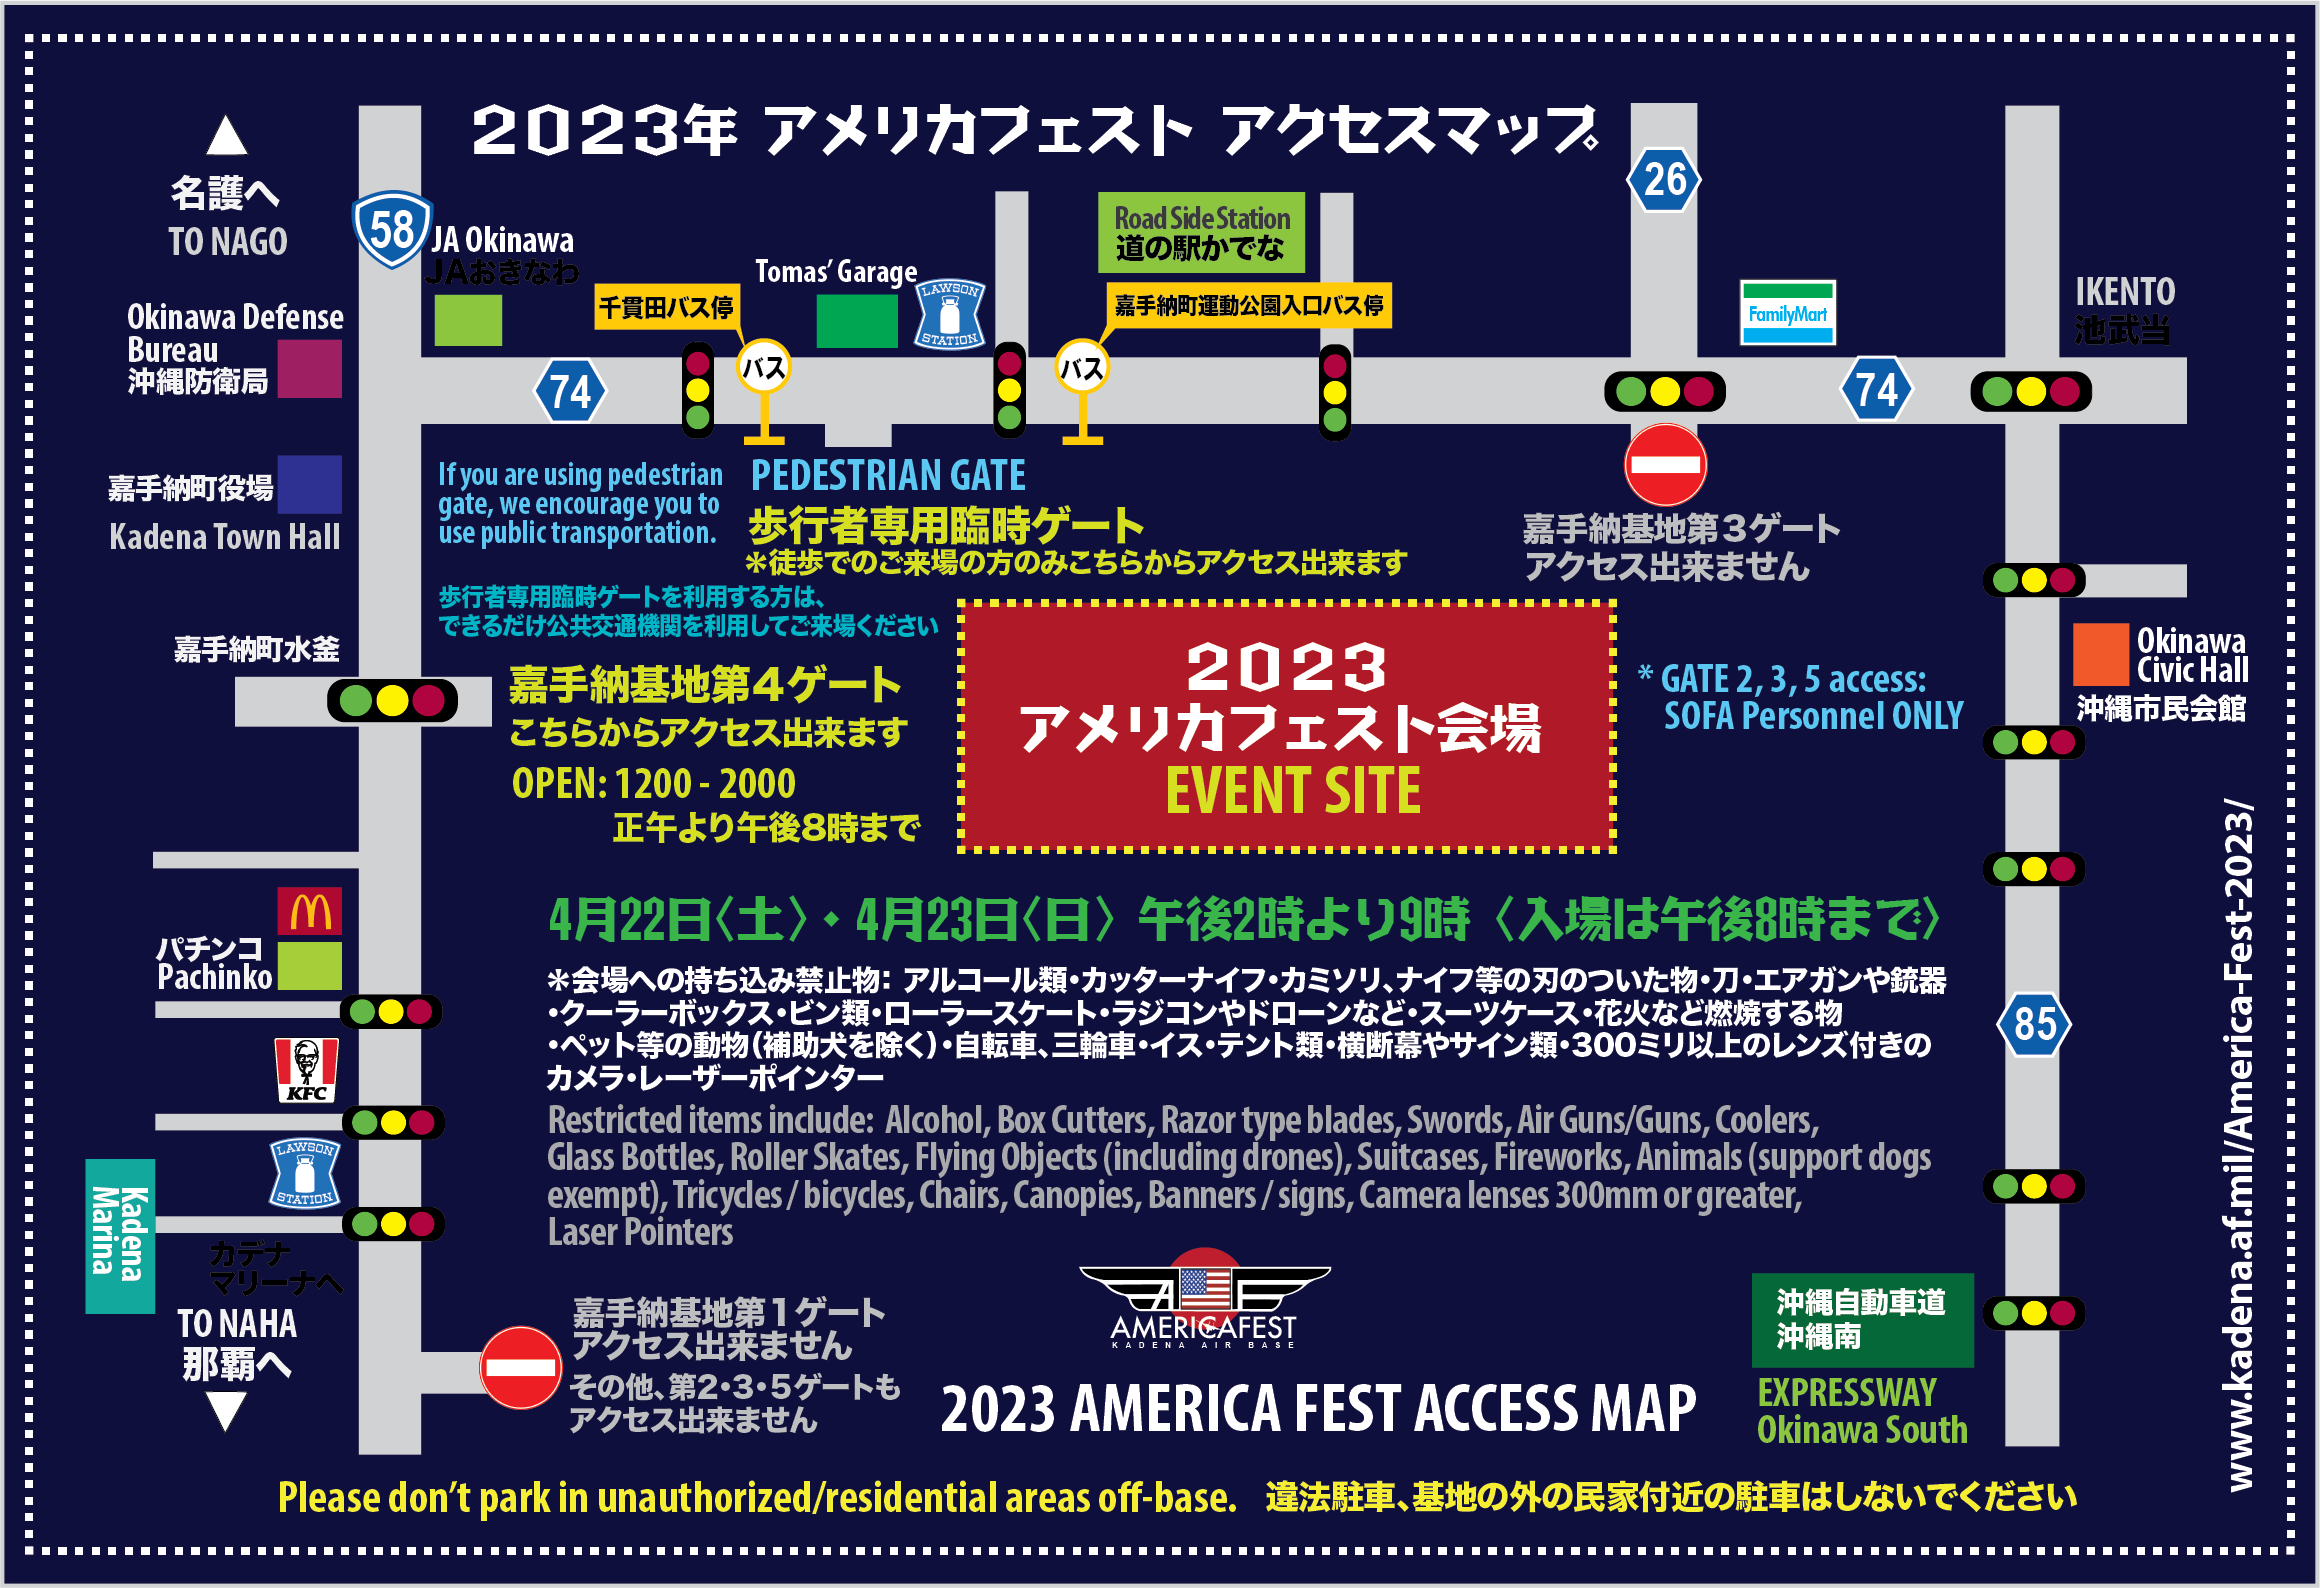 嘉手納基地アメリカフェスト2023のアクセスマップ